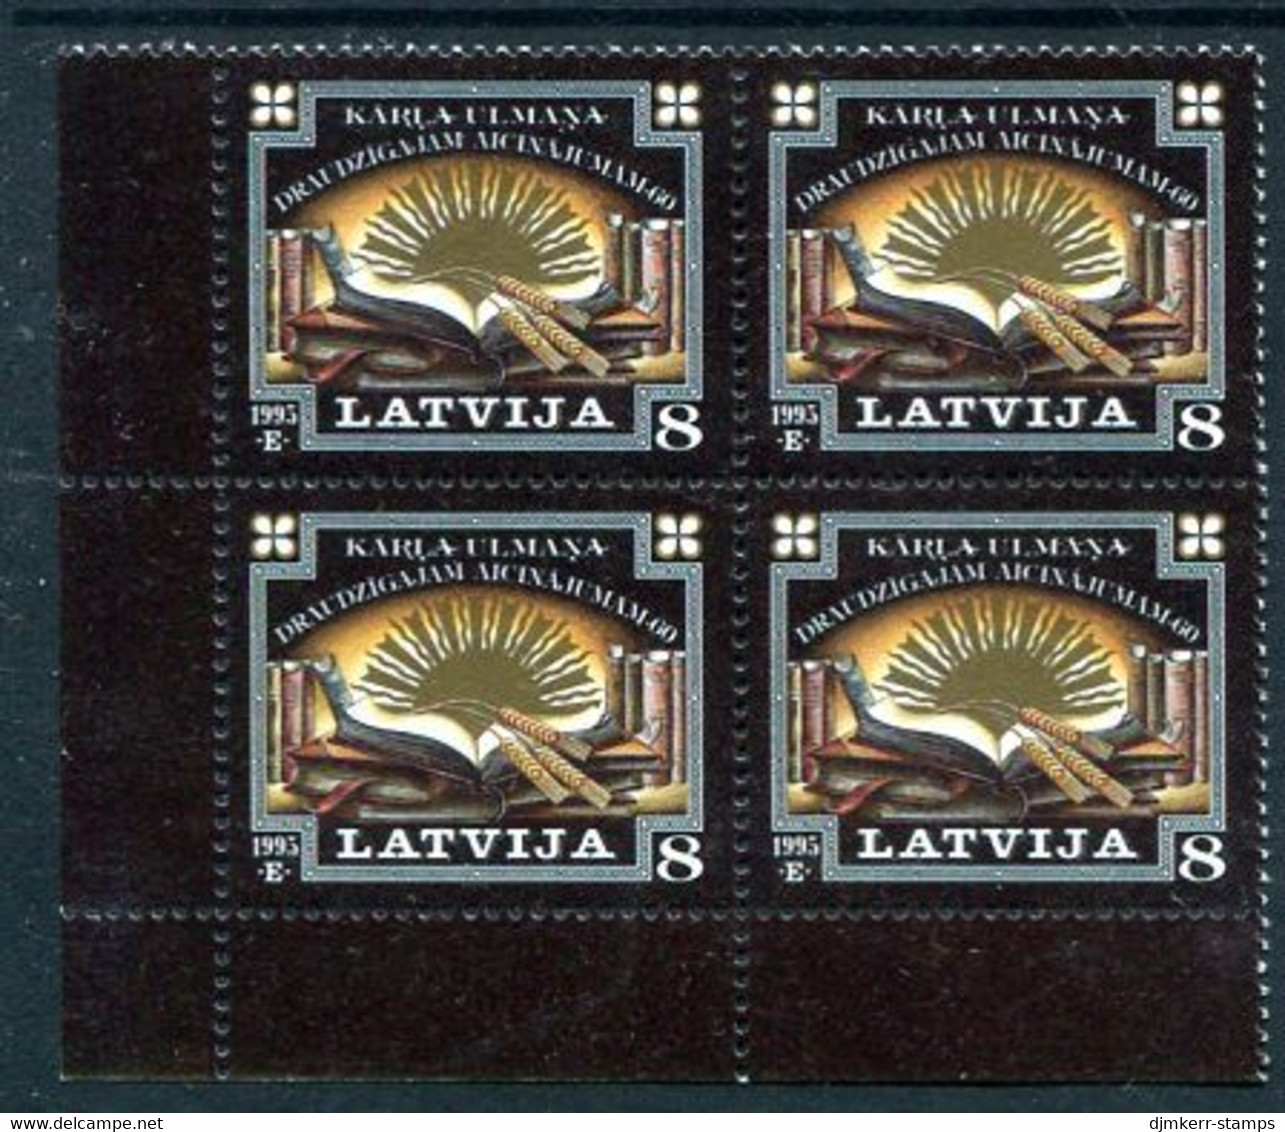 LATVIA 1995 Schools Appeal Block Of 4 MNH / **.  Michel 409 - Letland